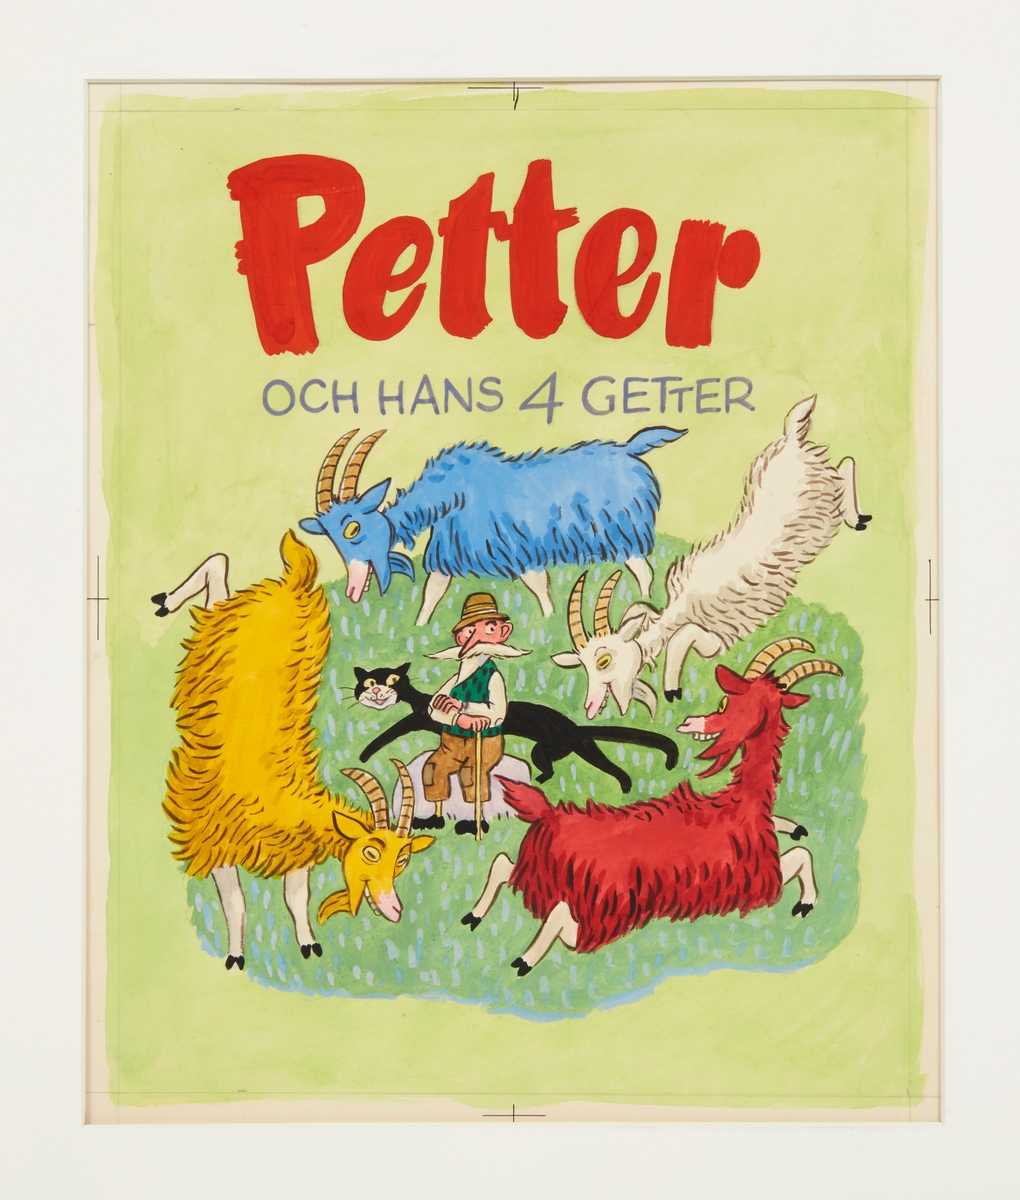 Omslag till barnboken Petter och hans fyra getter (egentligen Petter och hans 4 getter) från 1951 som Einar Norelius både illustrerade och skrev. Det är en klassisk barnsaga på rim som man lätt lär sig utantill. 

I sin stuga bodde Petter med en katt och fyra getter. Hela dagen måste Petter valla sina fyra getter. Mitt i skogen i en sten bodde trollet Ludenben. Ludenben var alltid arg - alltid hungrig som en varg. Petters getter åt han upp, fastän Petter ropa "Stopp". Då var katten Murre Svart tvungen att gripa in. 

I decennier har boken kommit ut i nya utgåvor, sedan 2007 av En bok för alla.